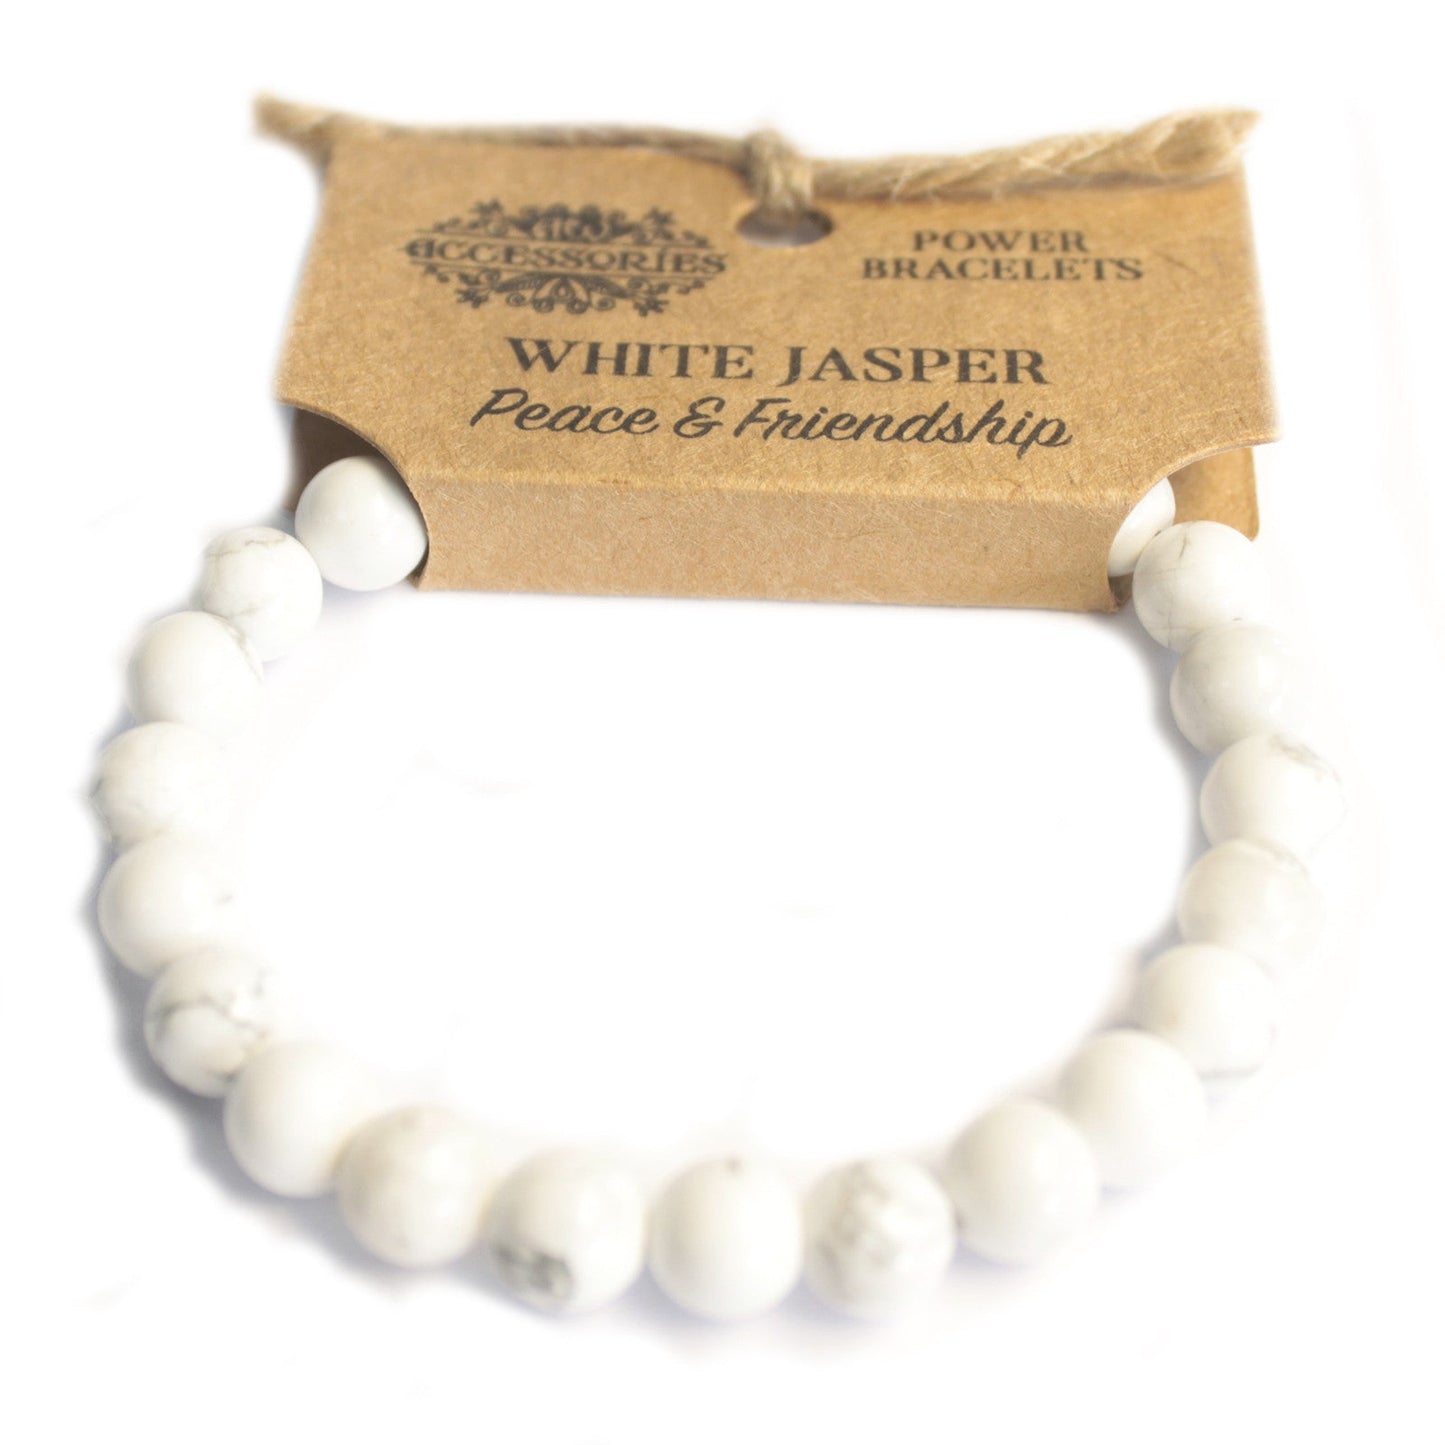 Crystal Healing Power Bracelets Power Bracelet Soul Inspired White Jasper 